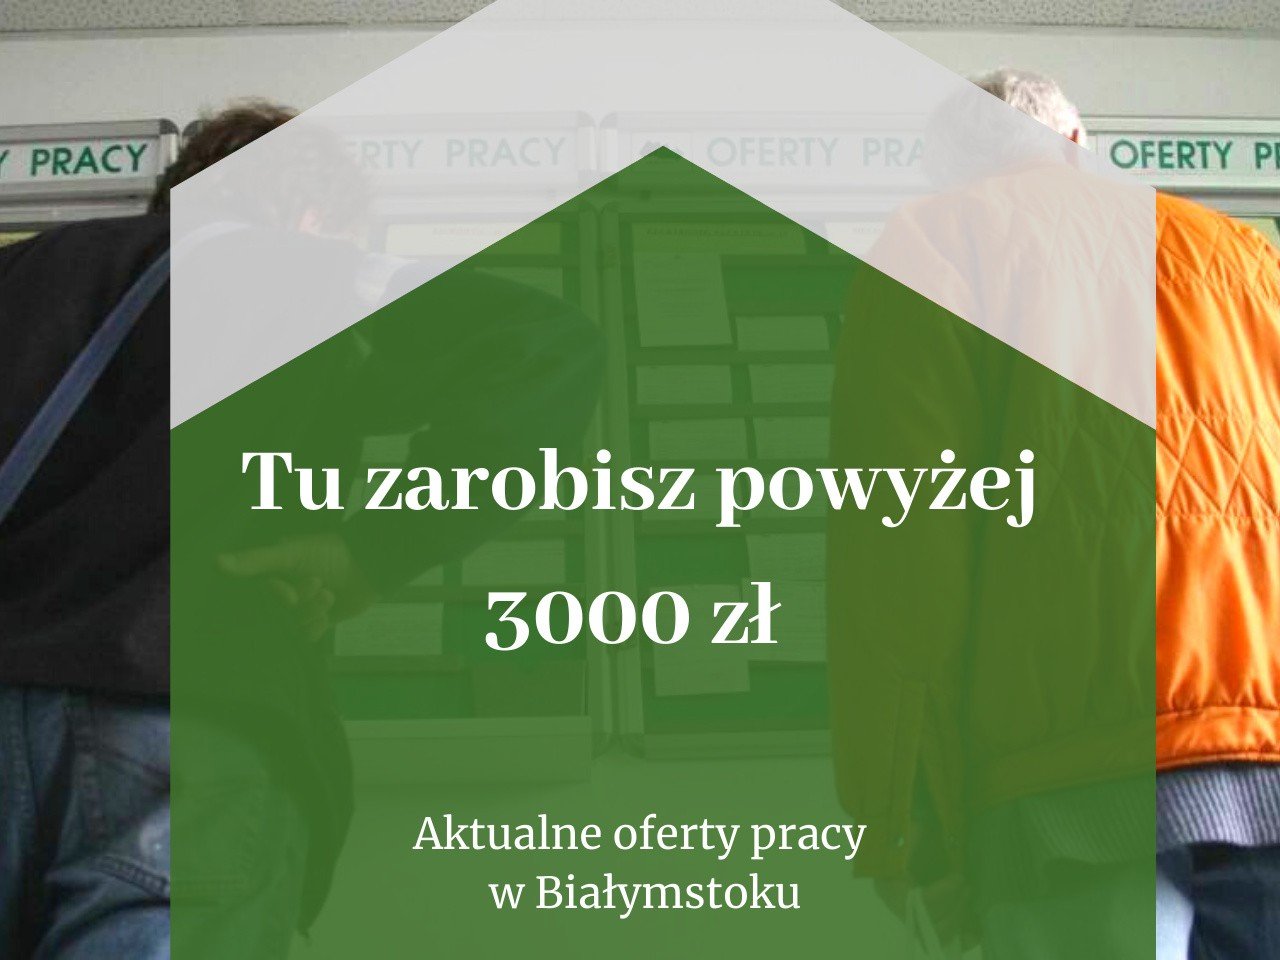 Praca w Białymstoku. Aktualne oferty pracy z wynagrodzeniem powyżej 3000 zł  w Powiatowym Urzędzie Pracy (7 listopada 2019) | Kurier Poranny